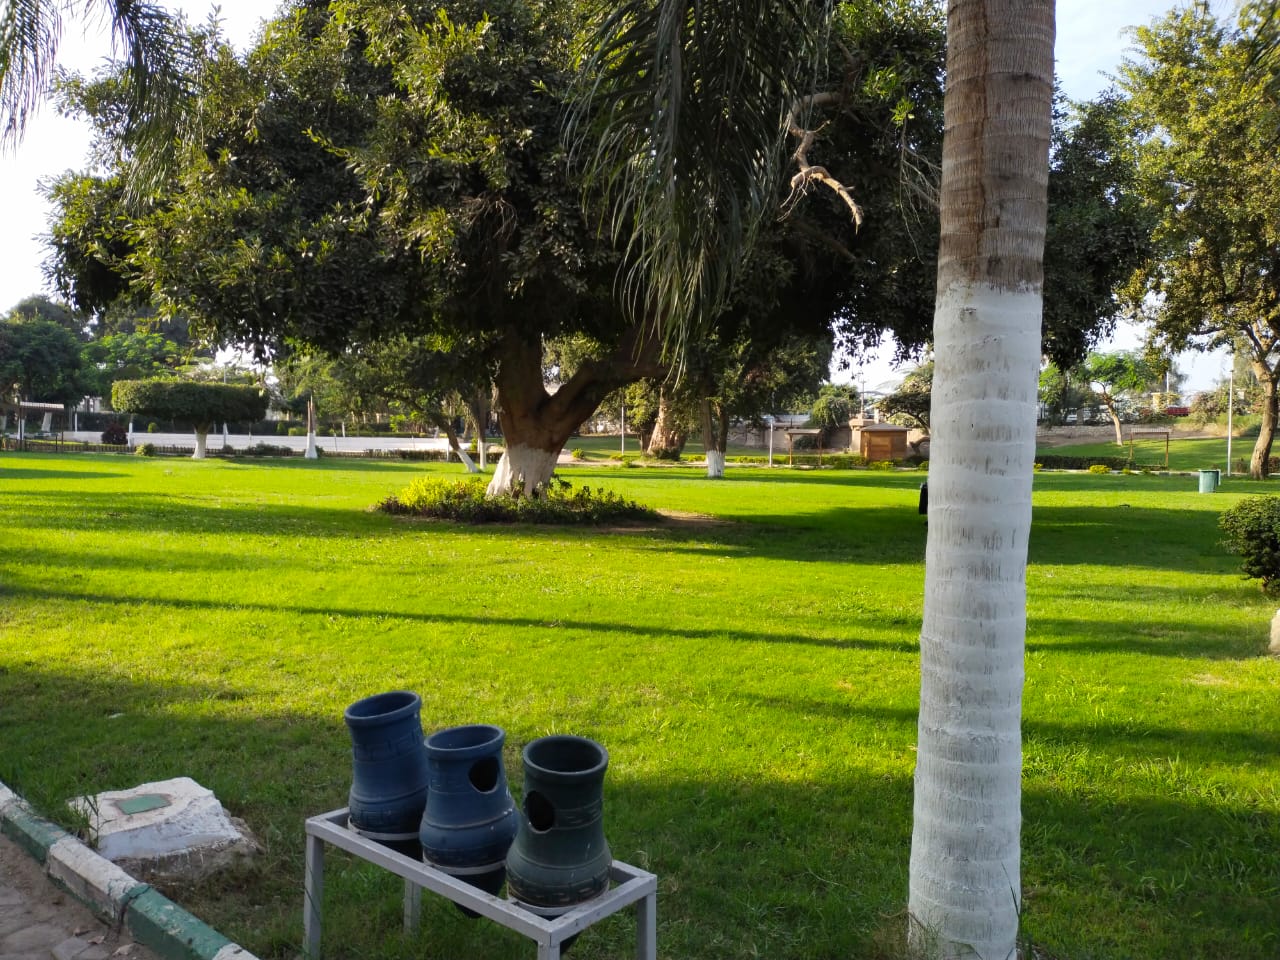 شجرة عمرها 200 سنة ومازالت خضراء زرعها محمد على باشا فى قلب حدائق القناطر الخيرية